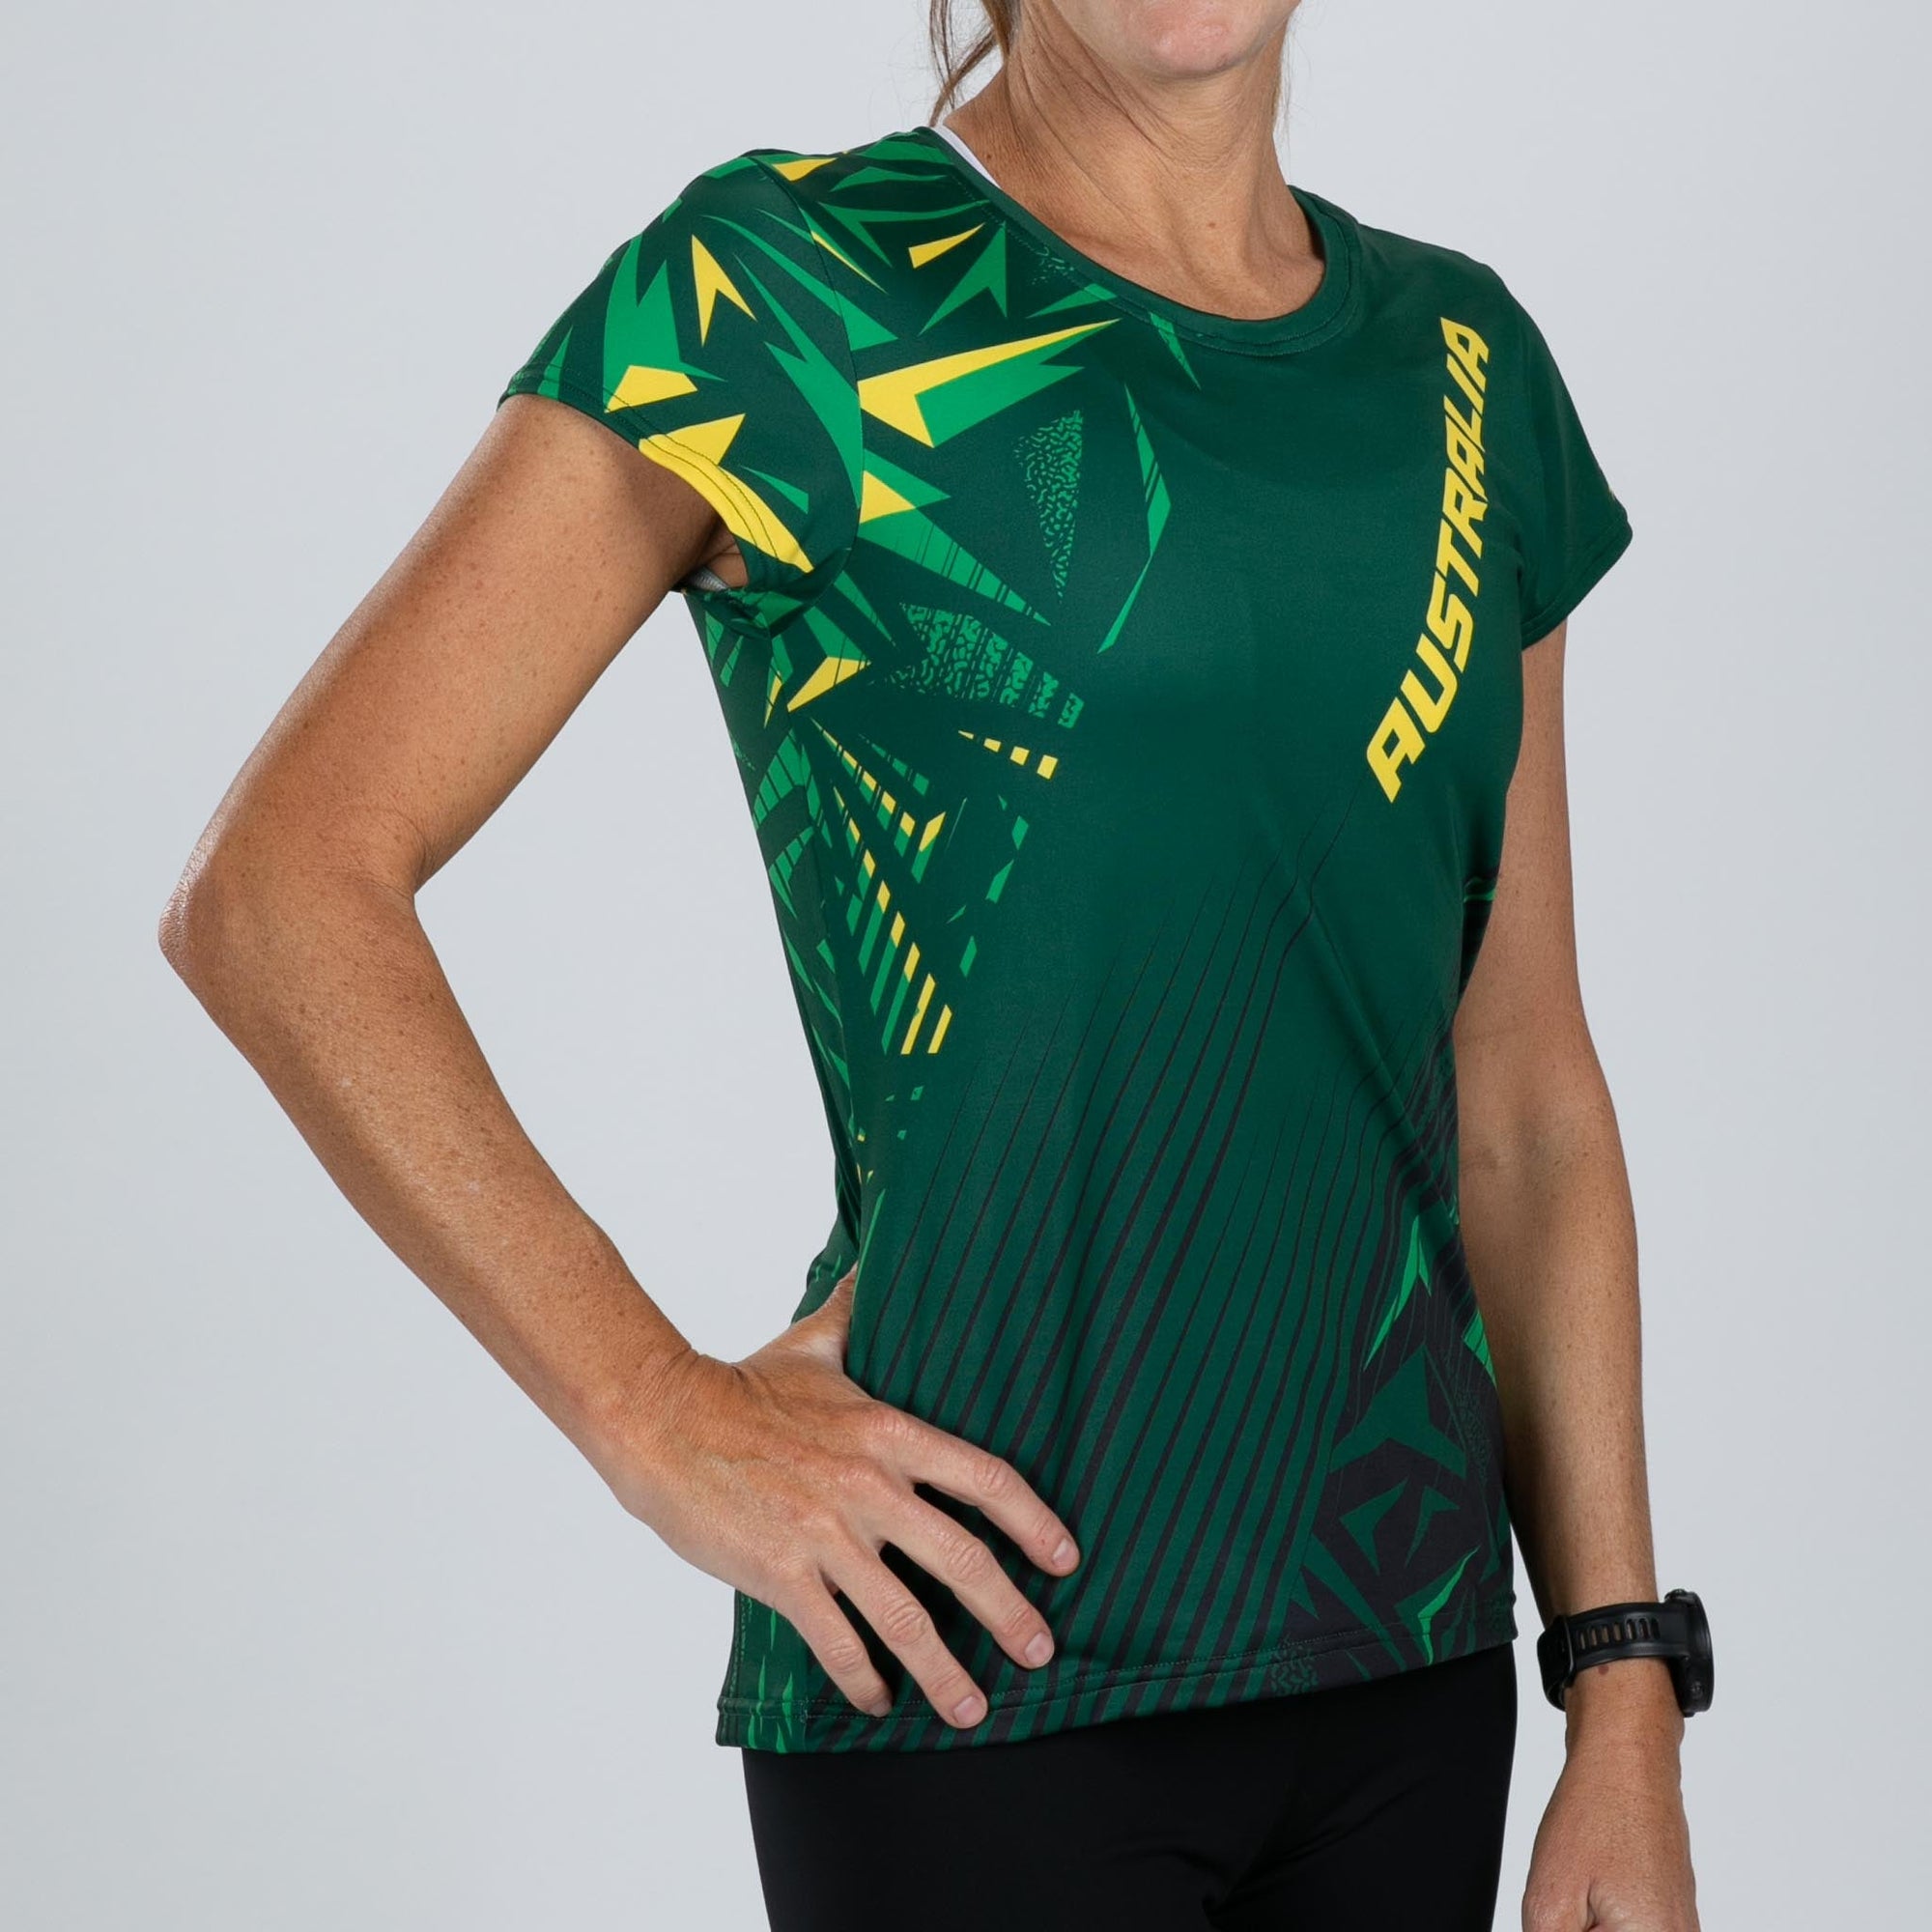 Zoot Sports RUN TEE Women's Ltd Run Tee - Australia